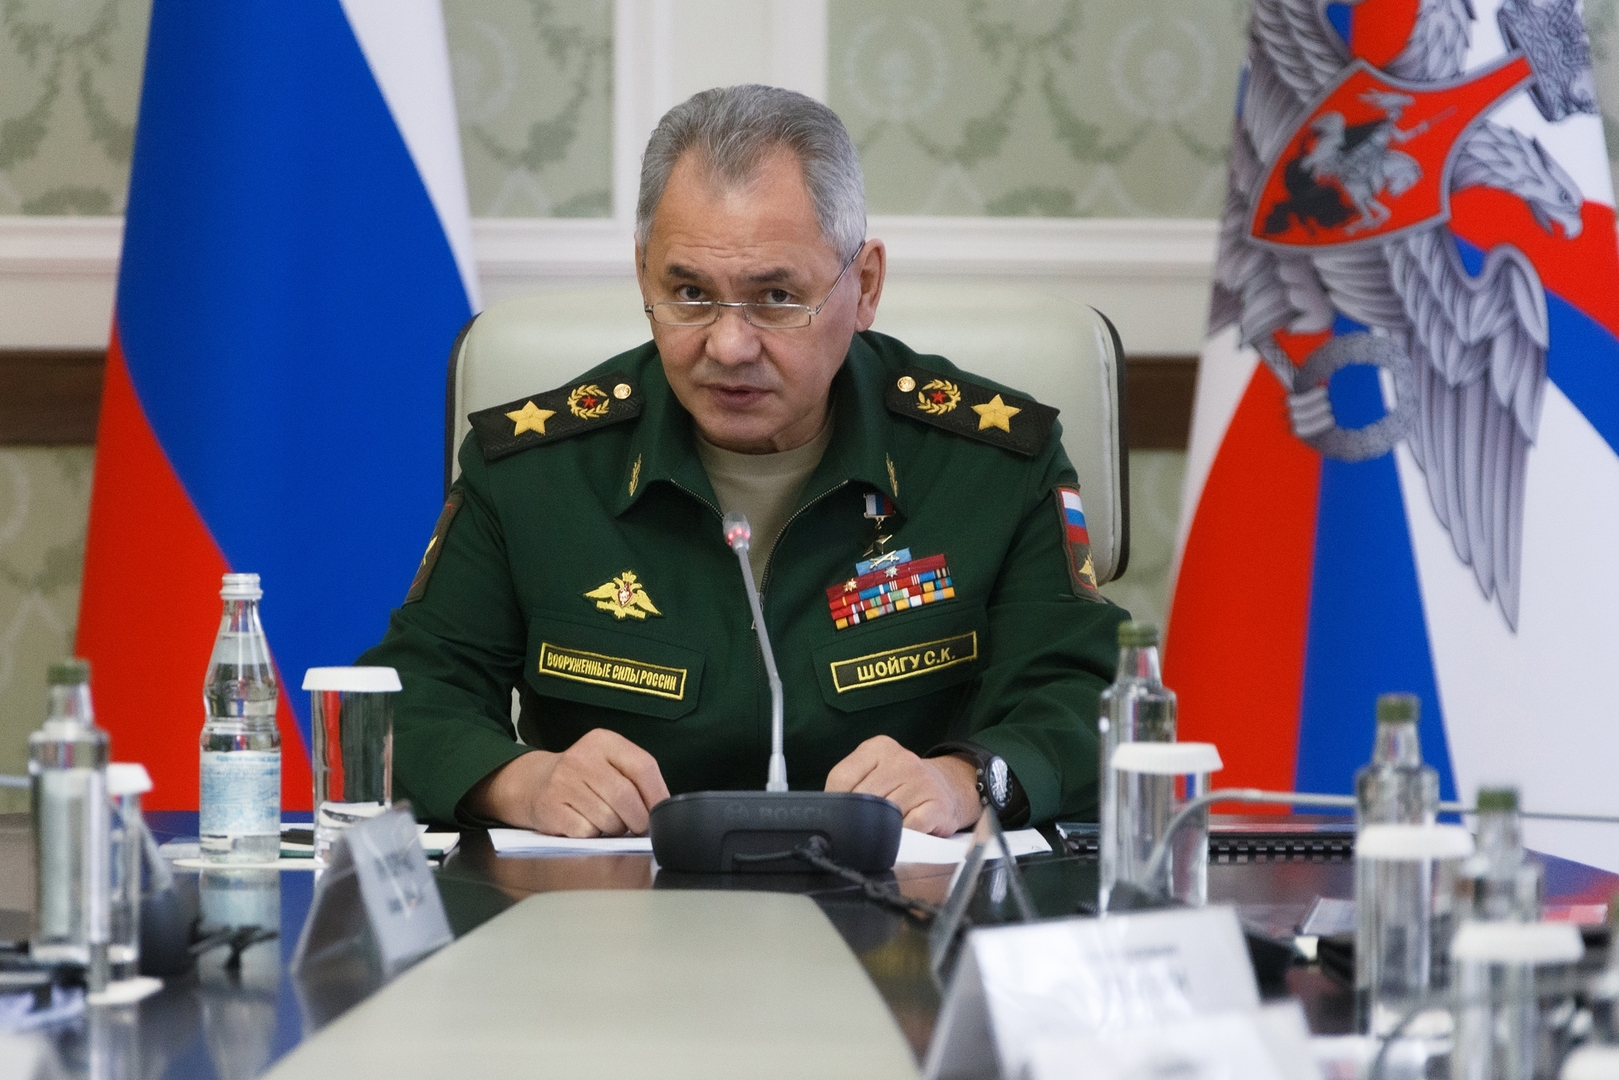 شويغو: روسيا وأرمينيا تعززان التعاون العسكري وتعمقان شراكتهما الاستراتيجية